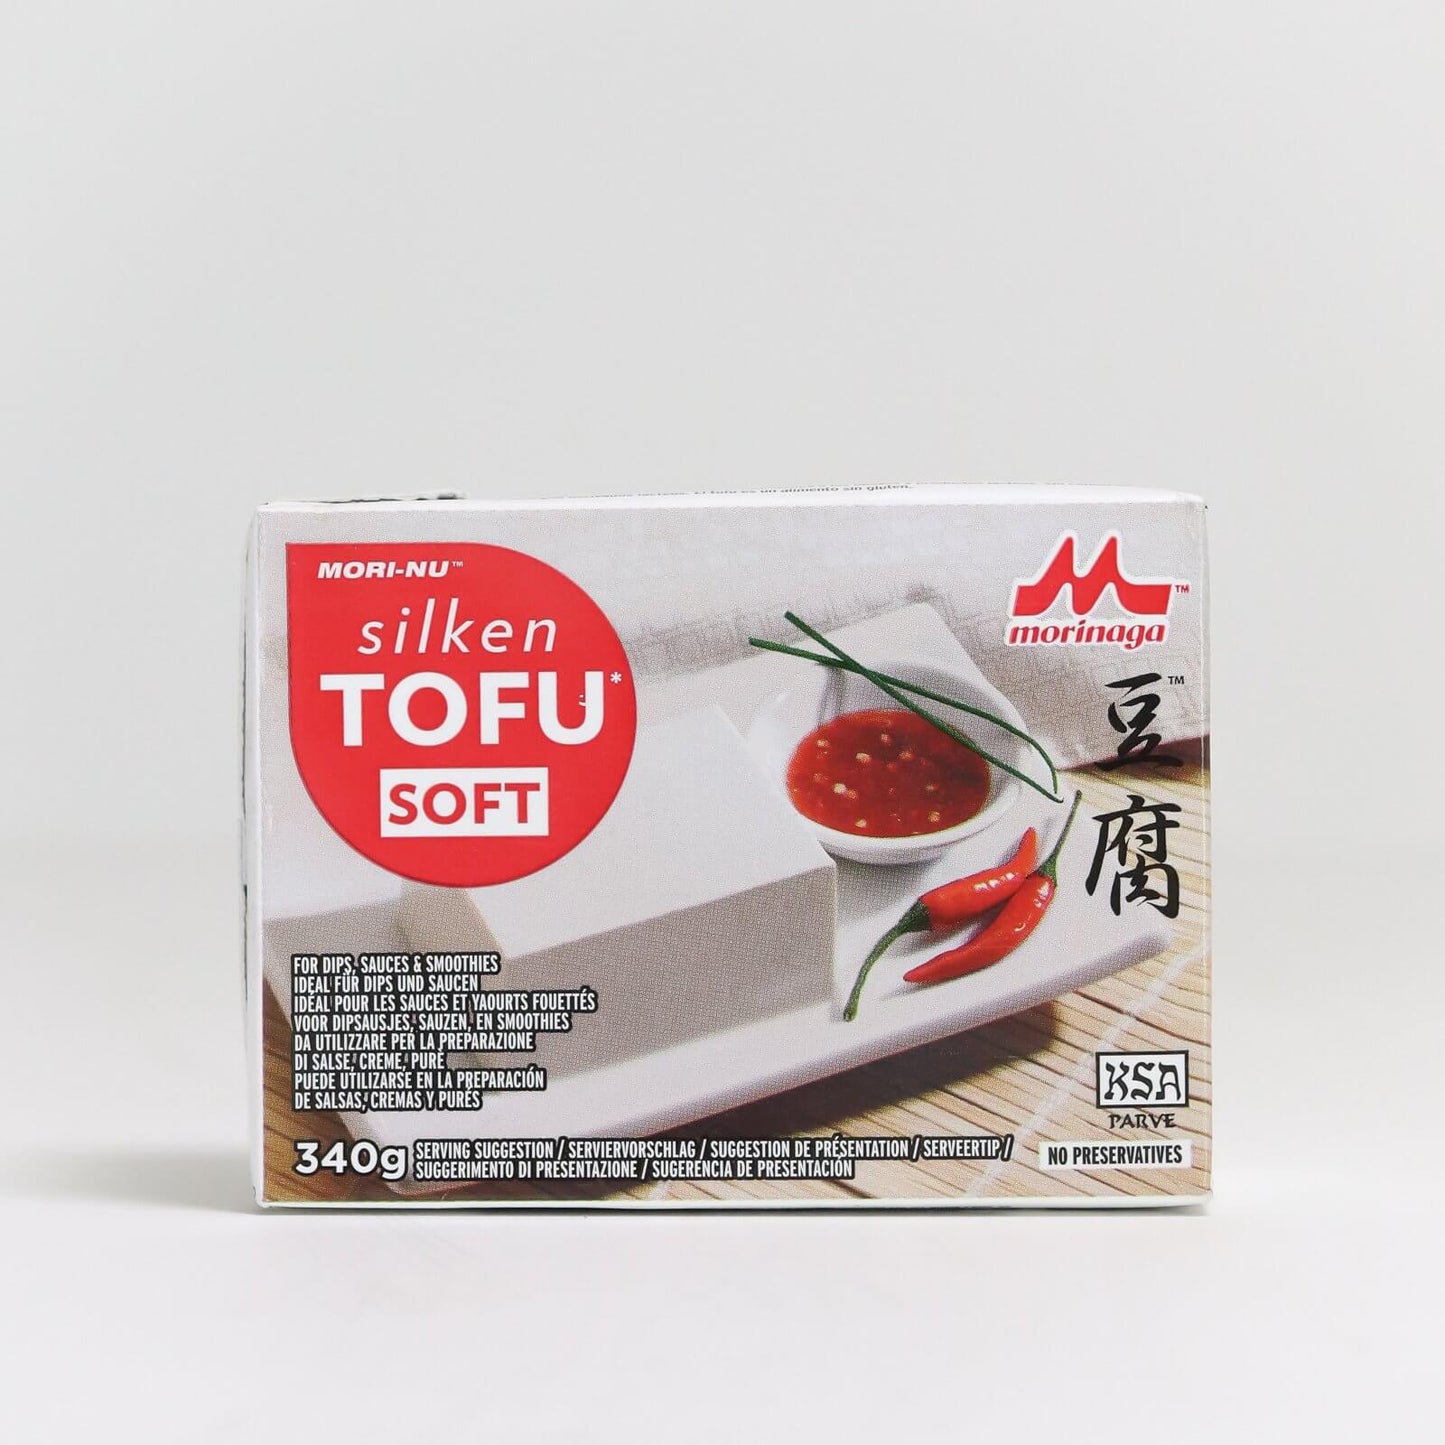 Morinaga Silken Tofu Soft (Red)